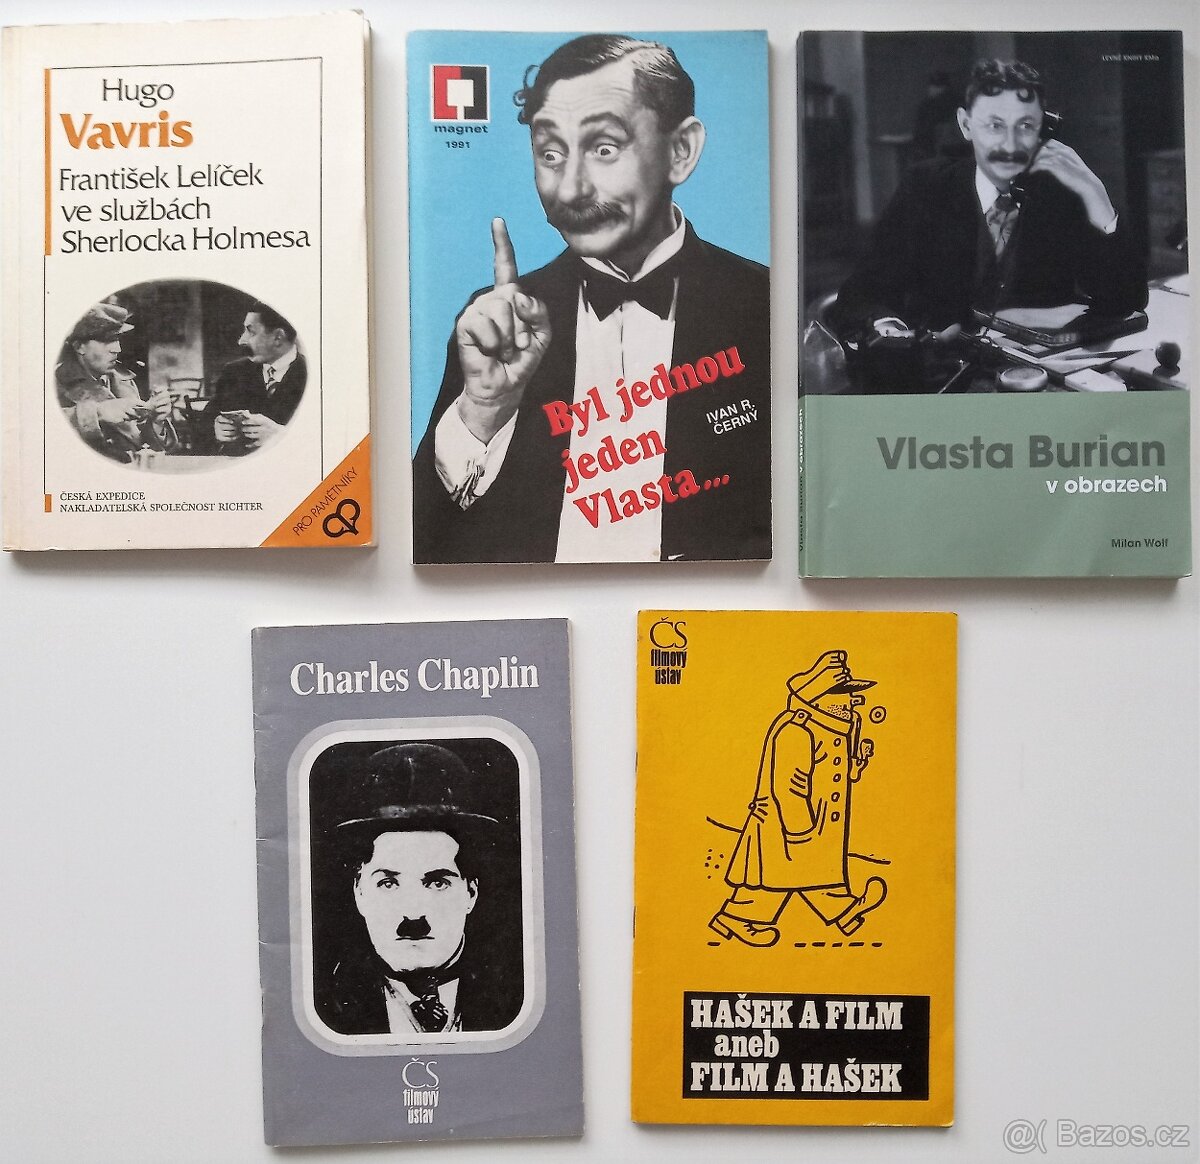 Knihy o: L. de Funés, Laurel&Hardy, B. Keaton, H. Lloyd